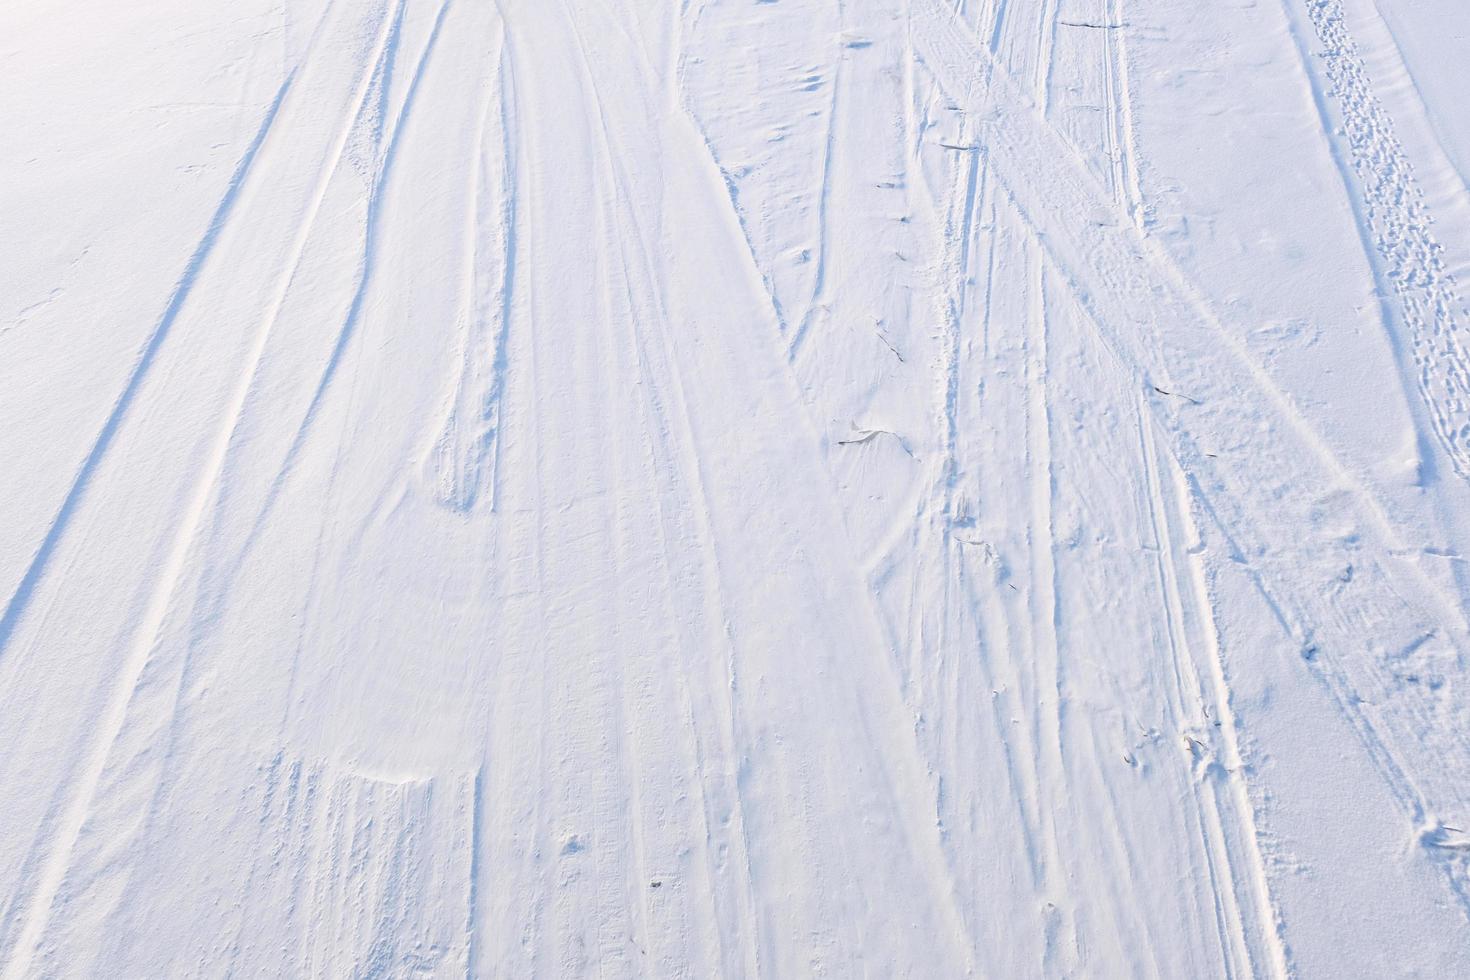 pista de esqui na neve branca e azul na superfície da montanha foto